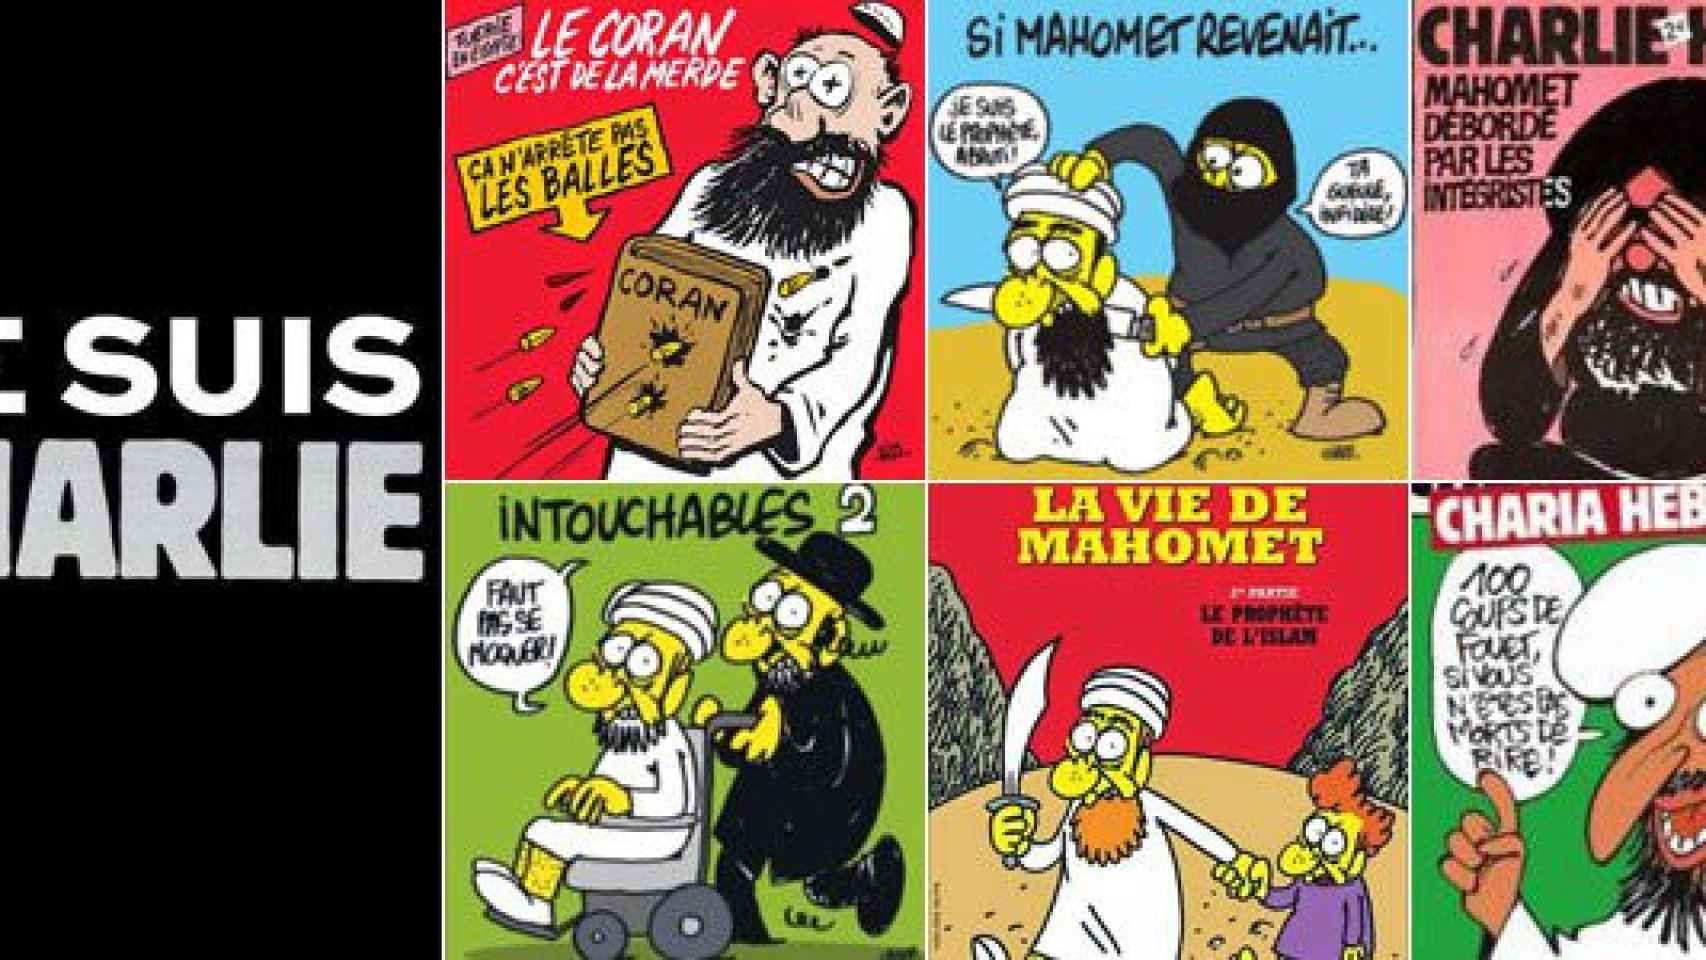 Los medios y las redes sociales repiten un mensaje de repulsa contra el atentado terrorista islamista: Yo soy Charlie. La reproducción de las caricaturas del semanario satírico francés se convierte en la mejor forma de homenajear a las víctimas.